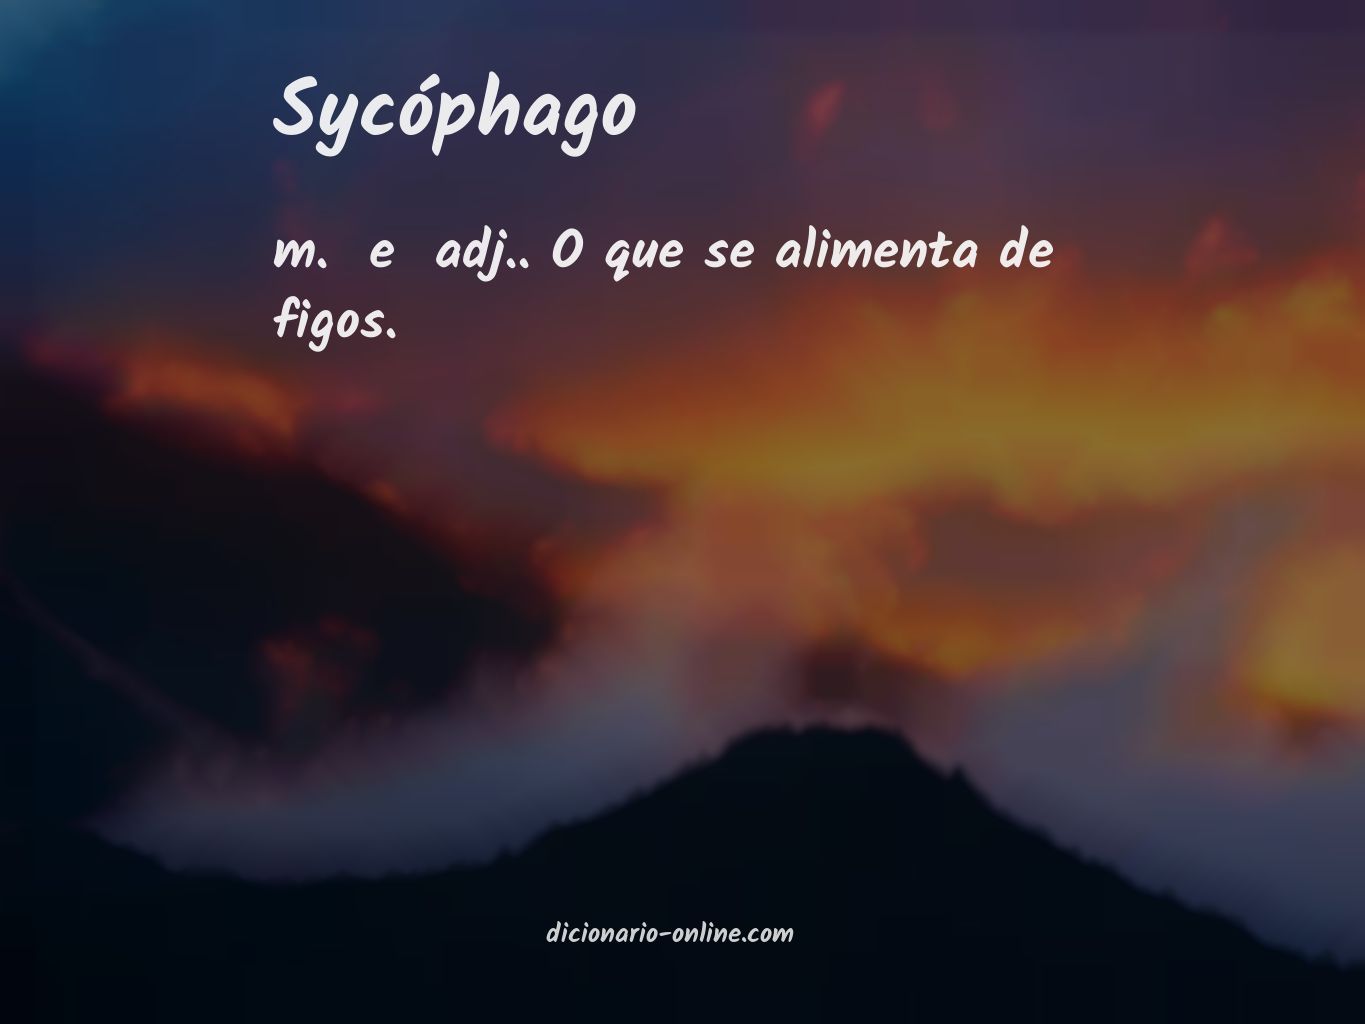 Significado de sycóphago